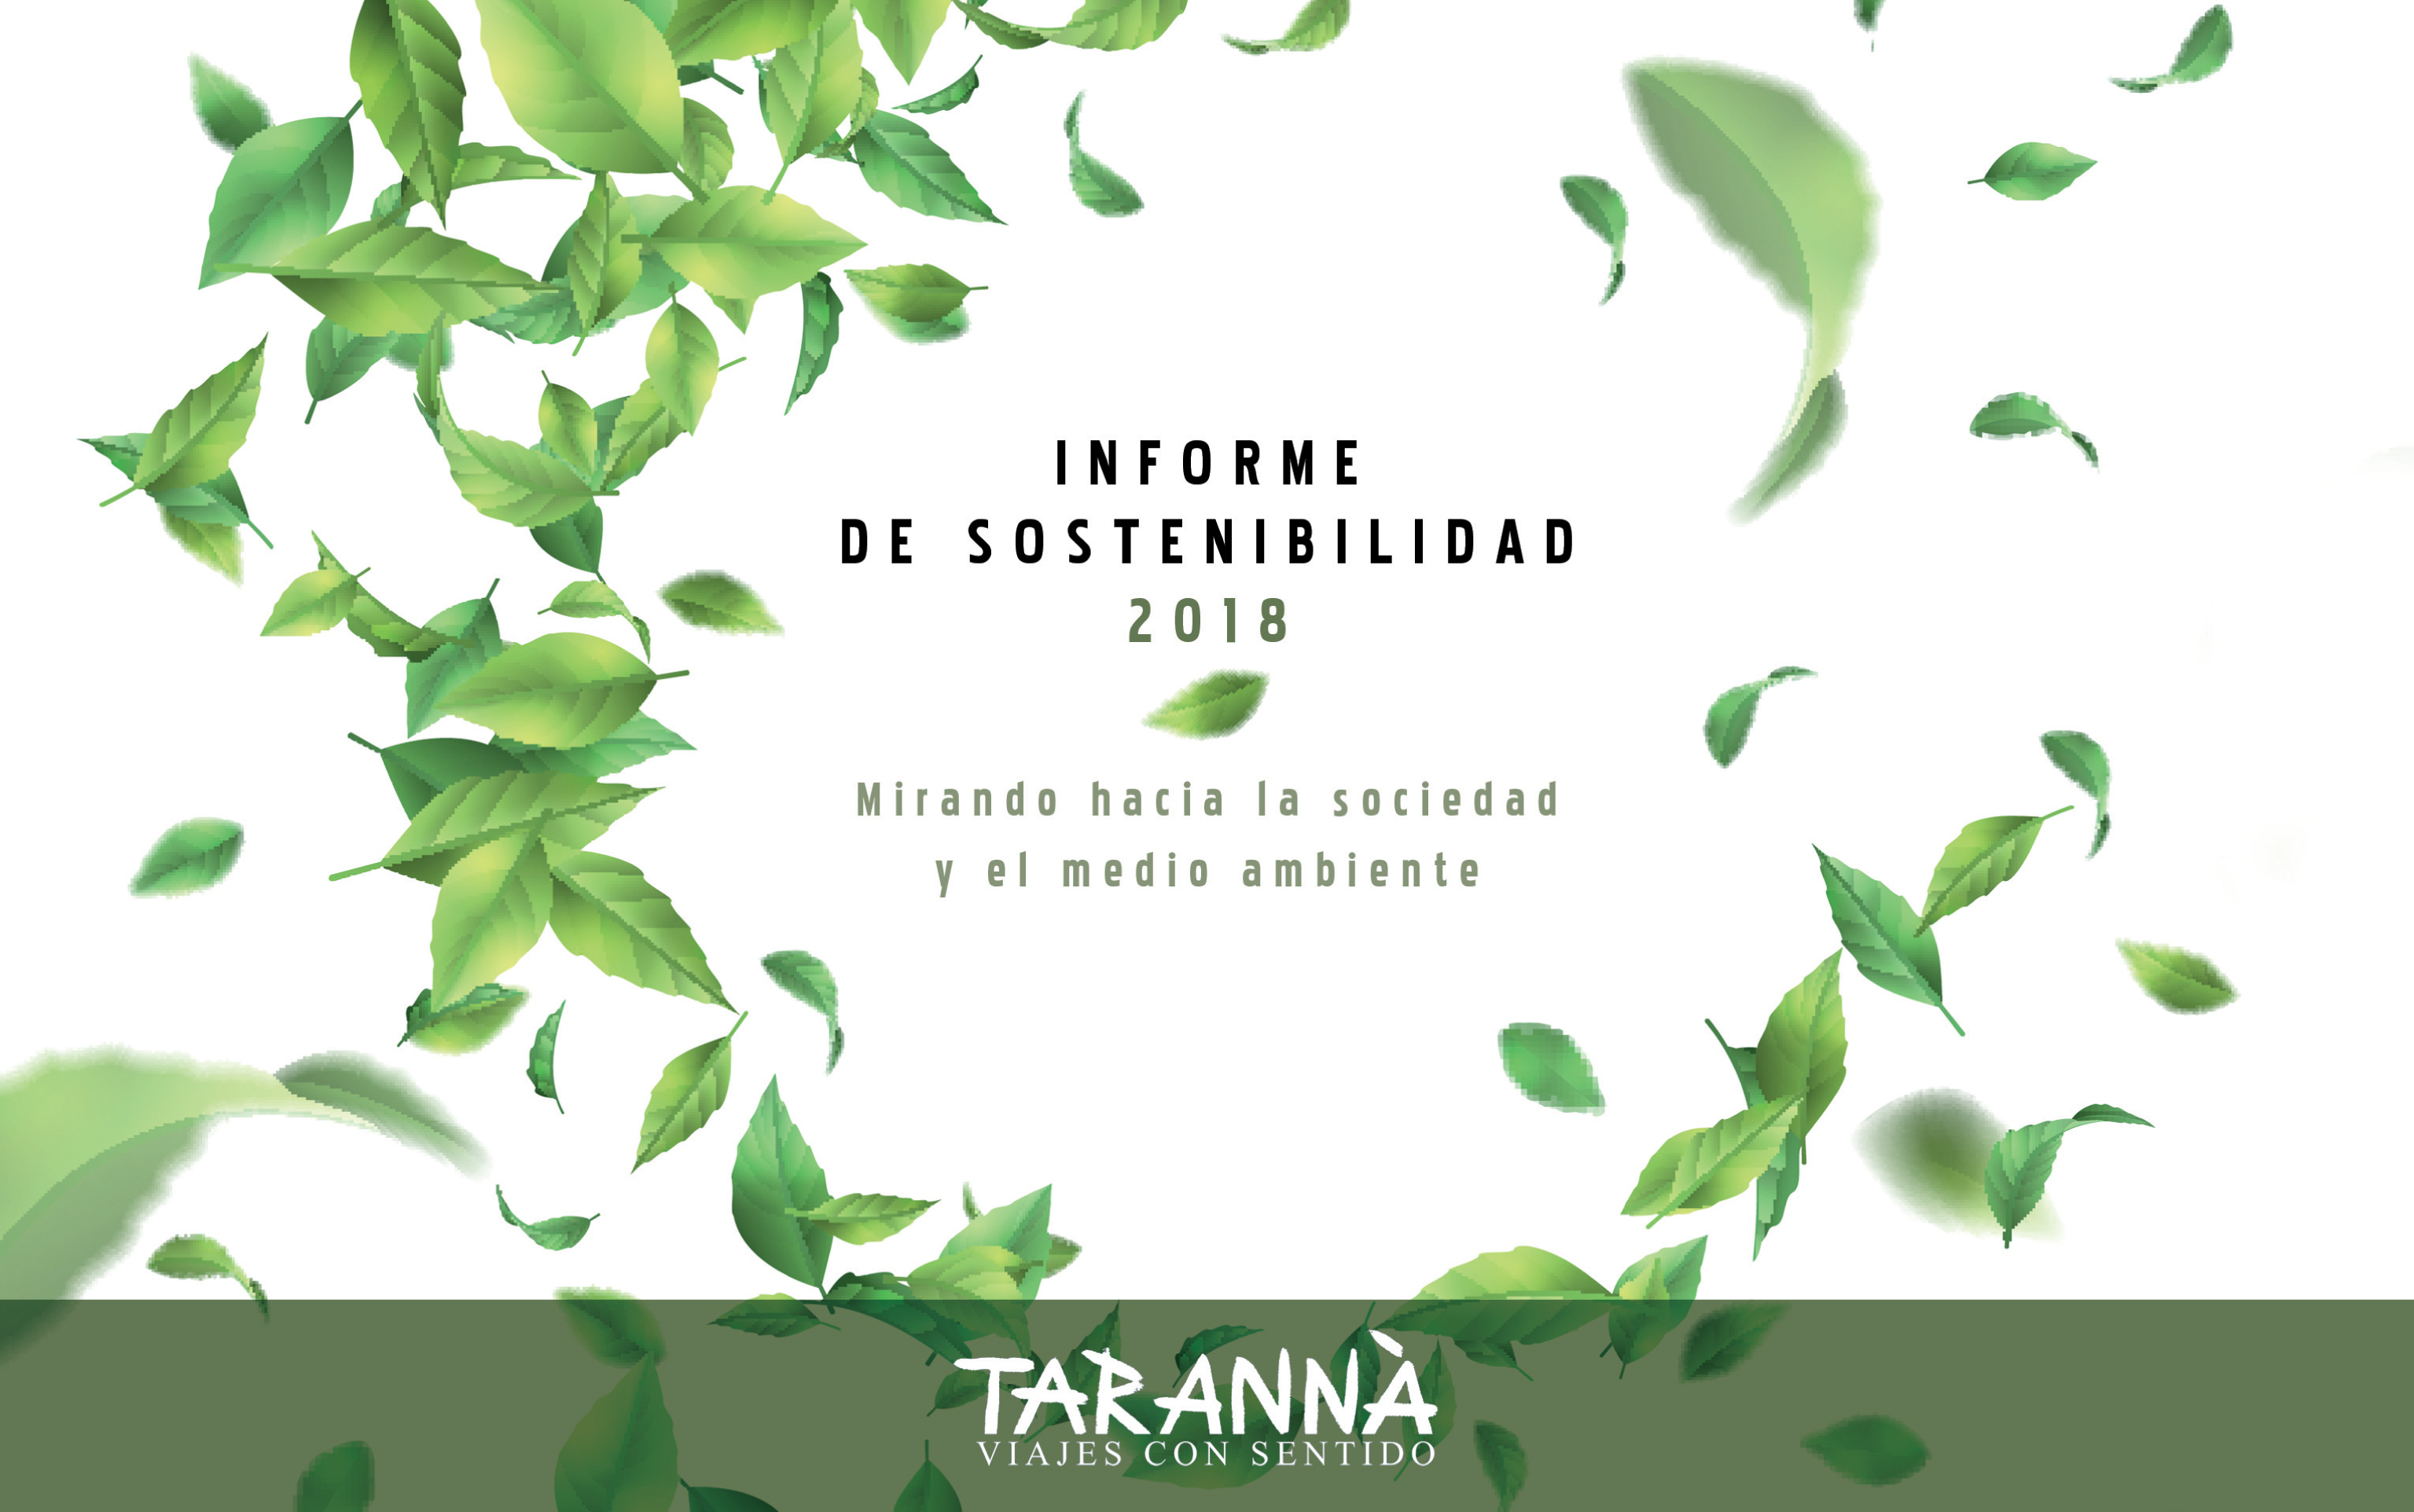 Tarannà Viajes con Sentido presenta la Memoria de Sostenibilidad 2018